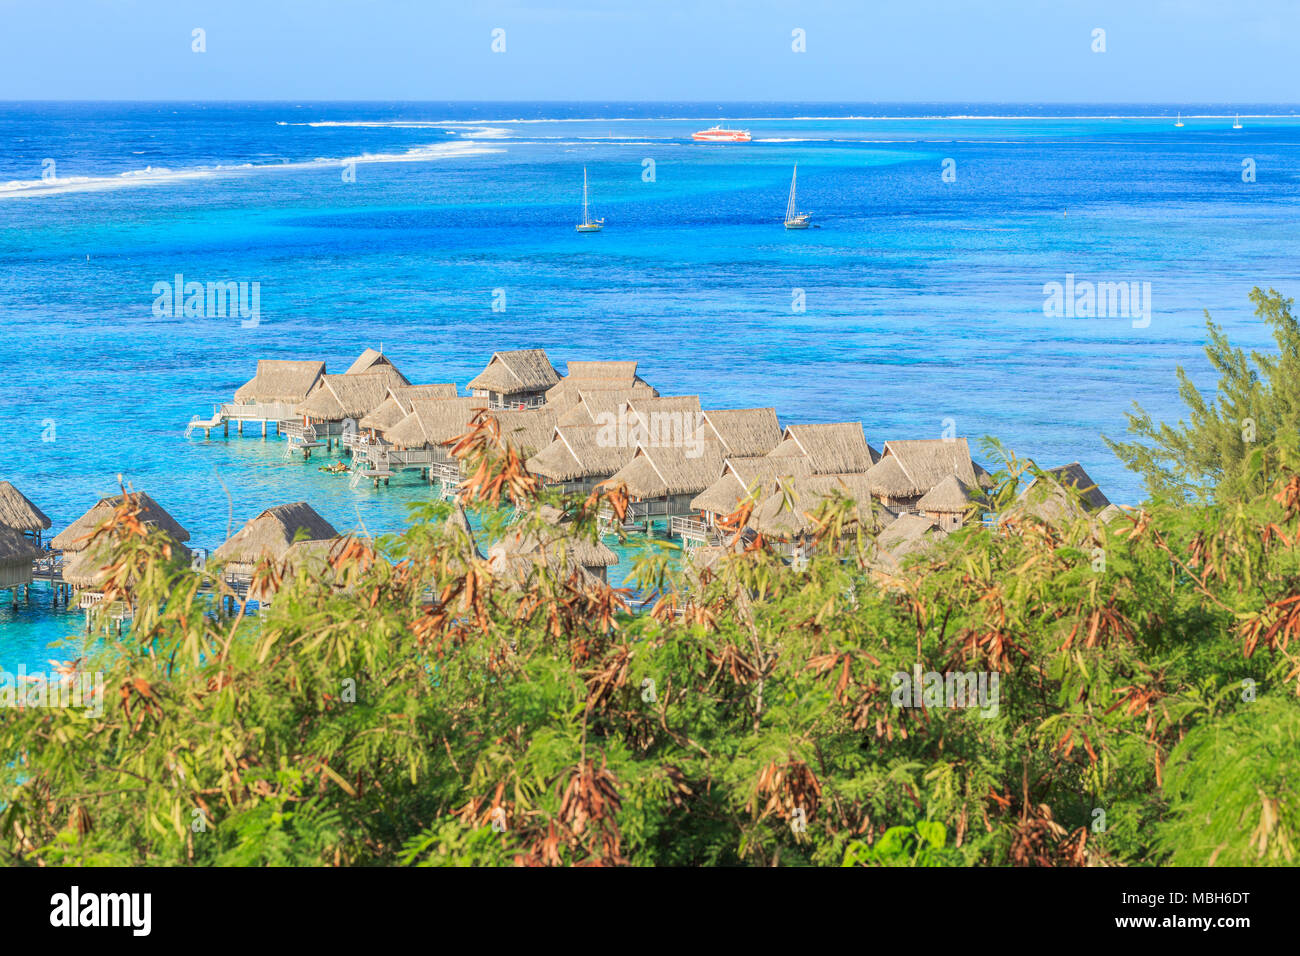 Das schöne Meer und das Resort in Insel Moorea, Tahiti, Papeete, Französisch-Polynesien Stockfoto